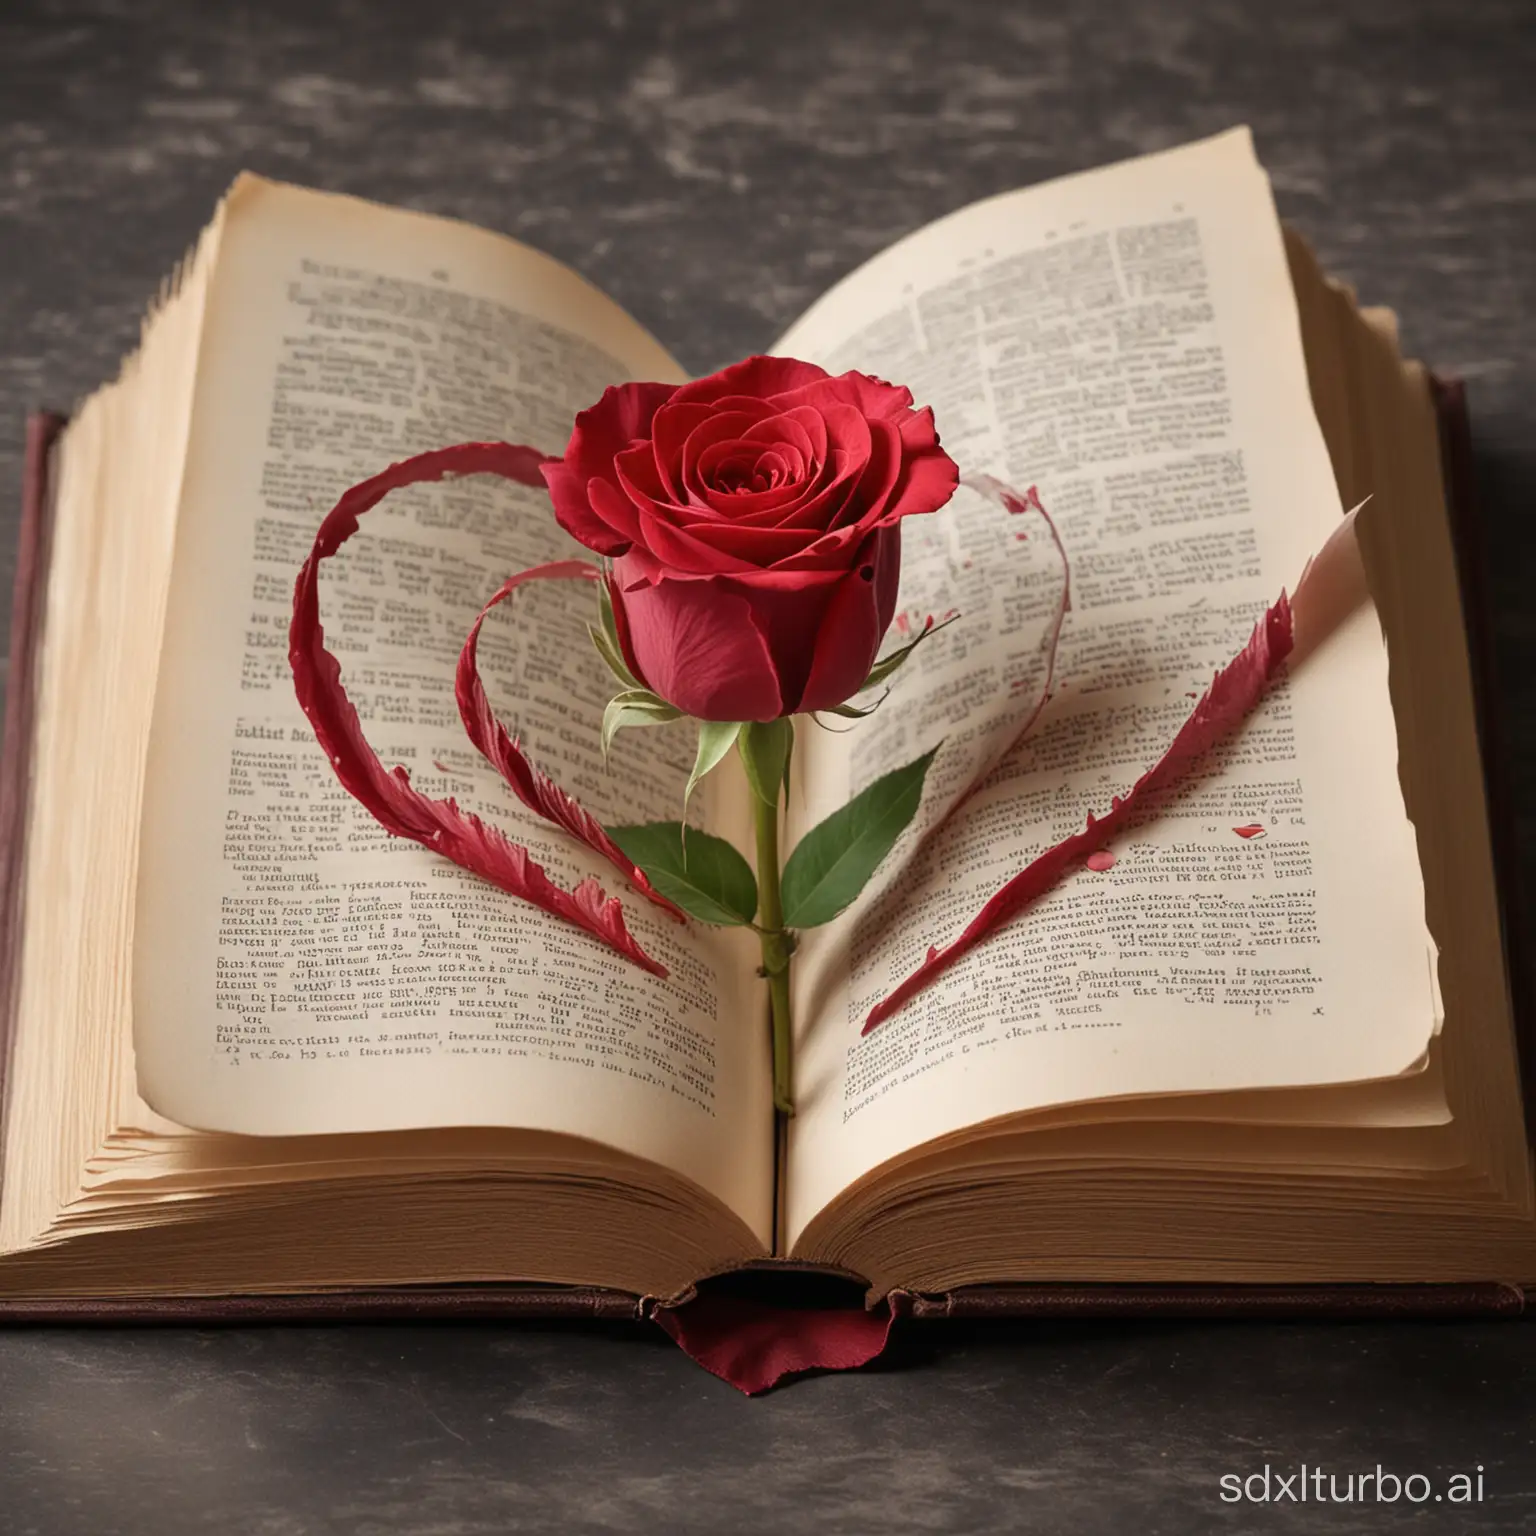 libro abierto, donde nace una rosa de su centro, y sus petalos tiene forma de corazon